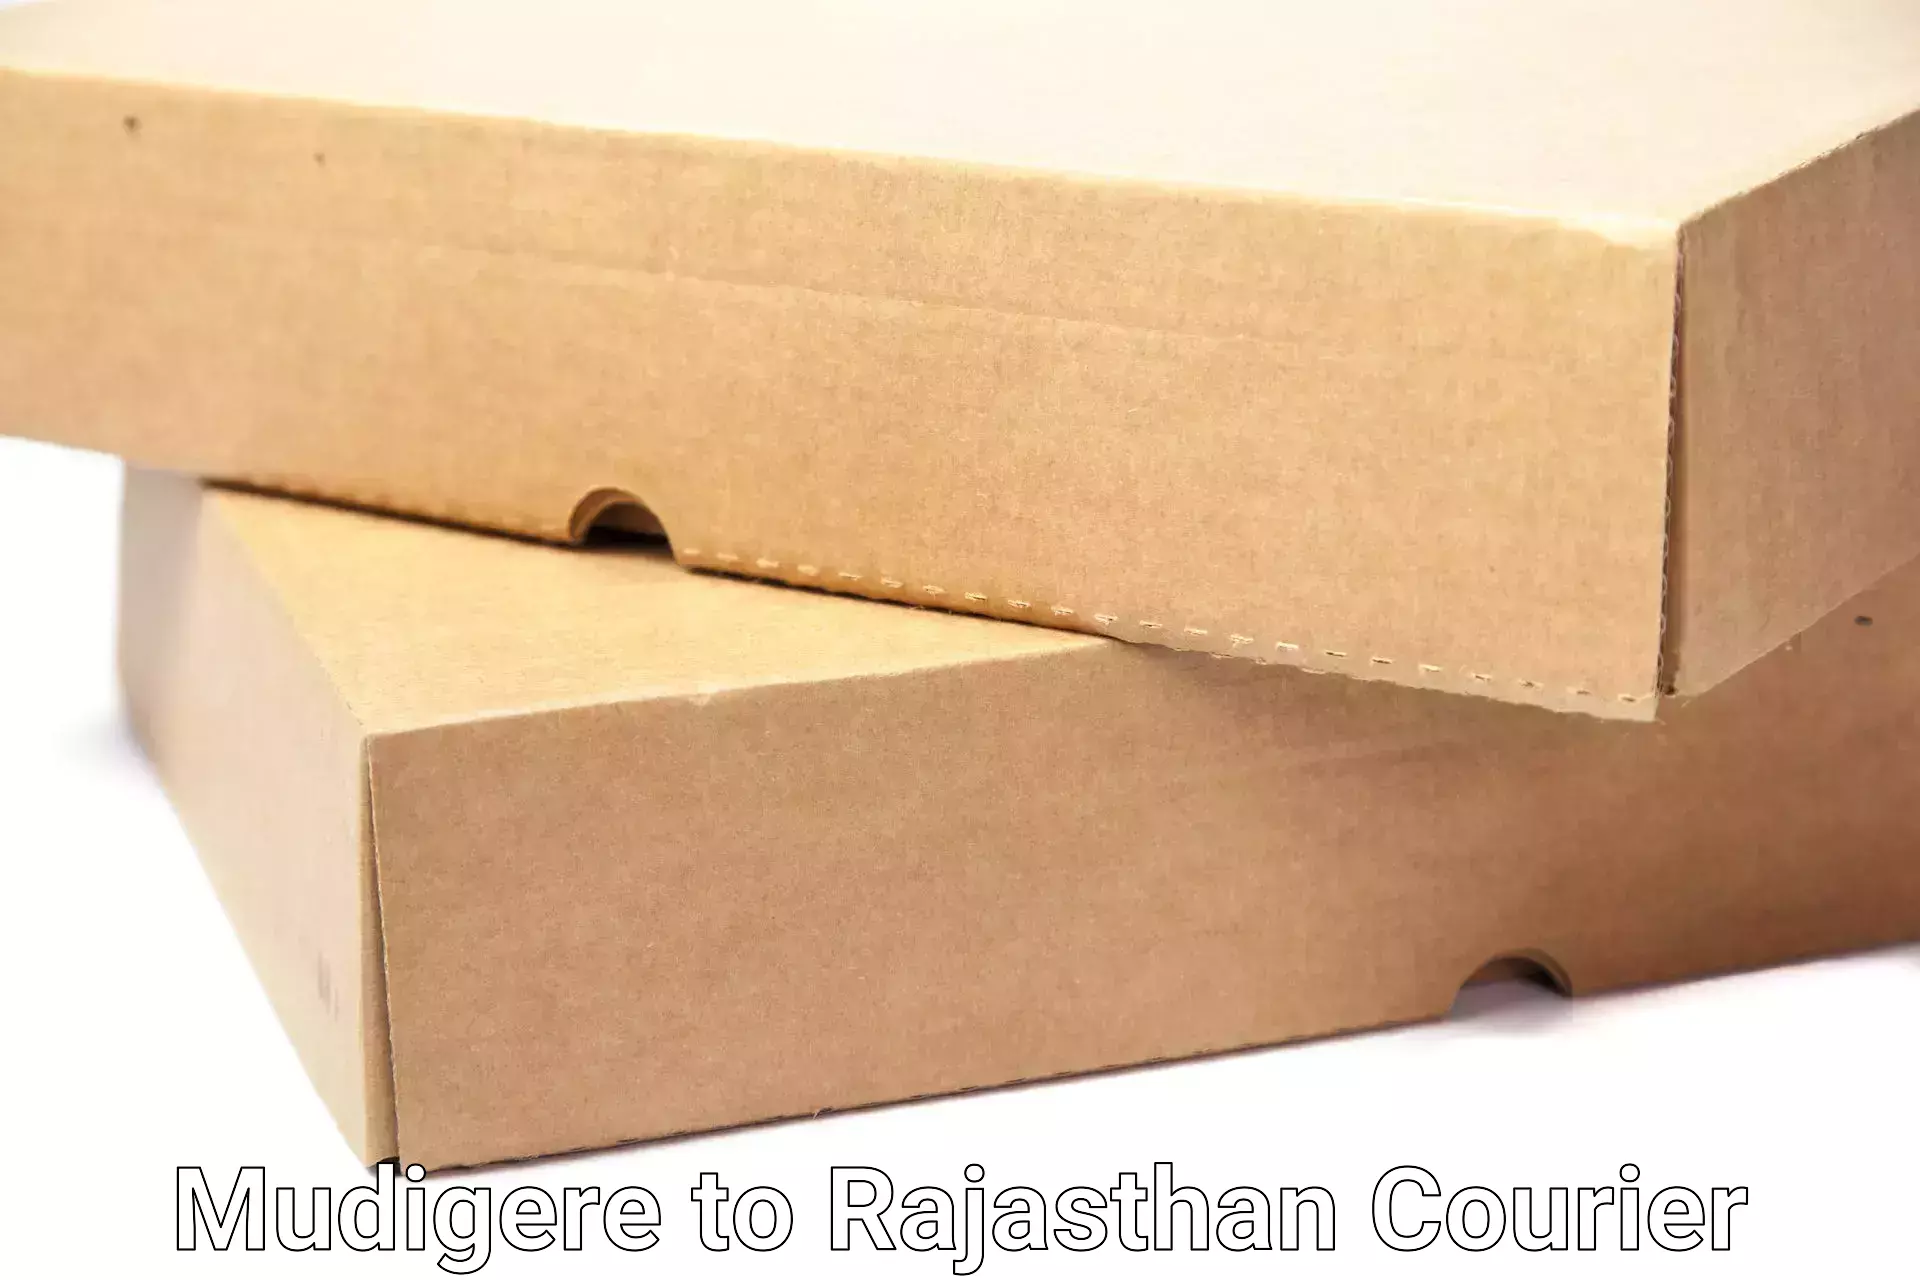 Furniture moving experts Mudigere to Rajasthan